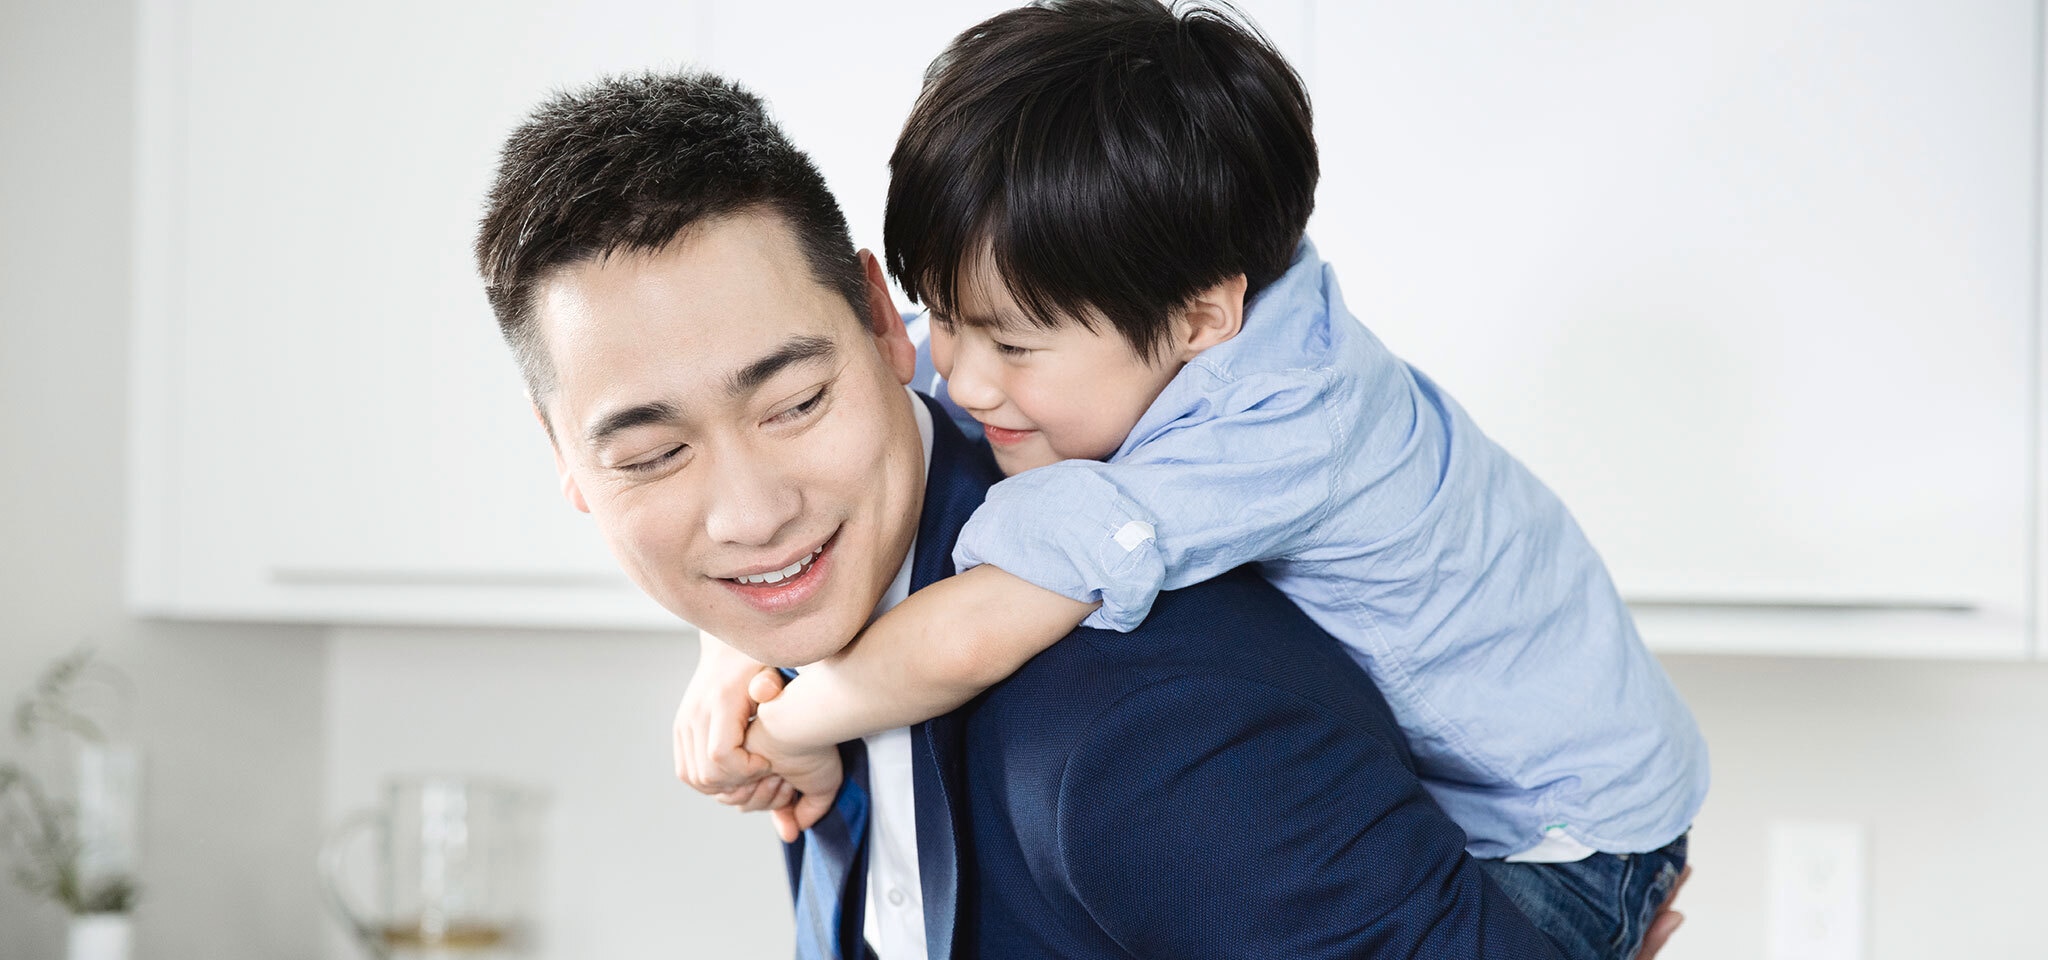 6 conseils pour le congé de paternité - Dove Men+Care